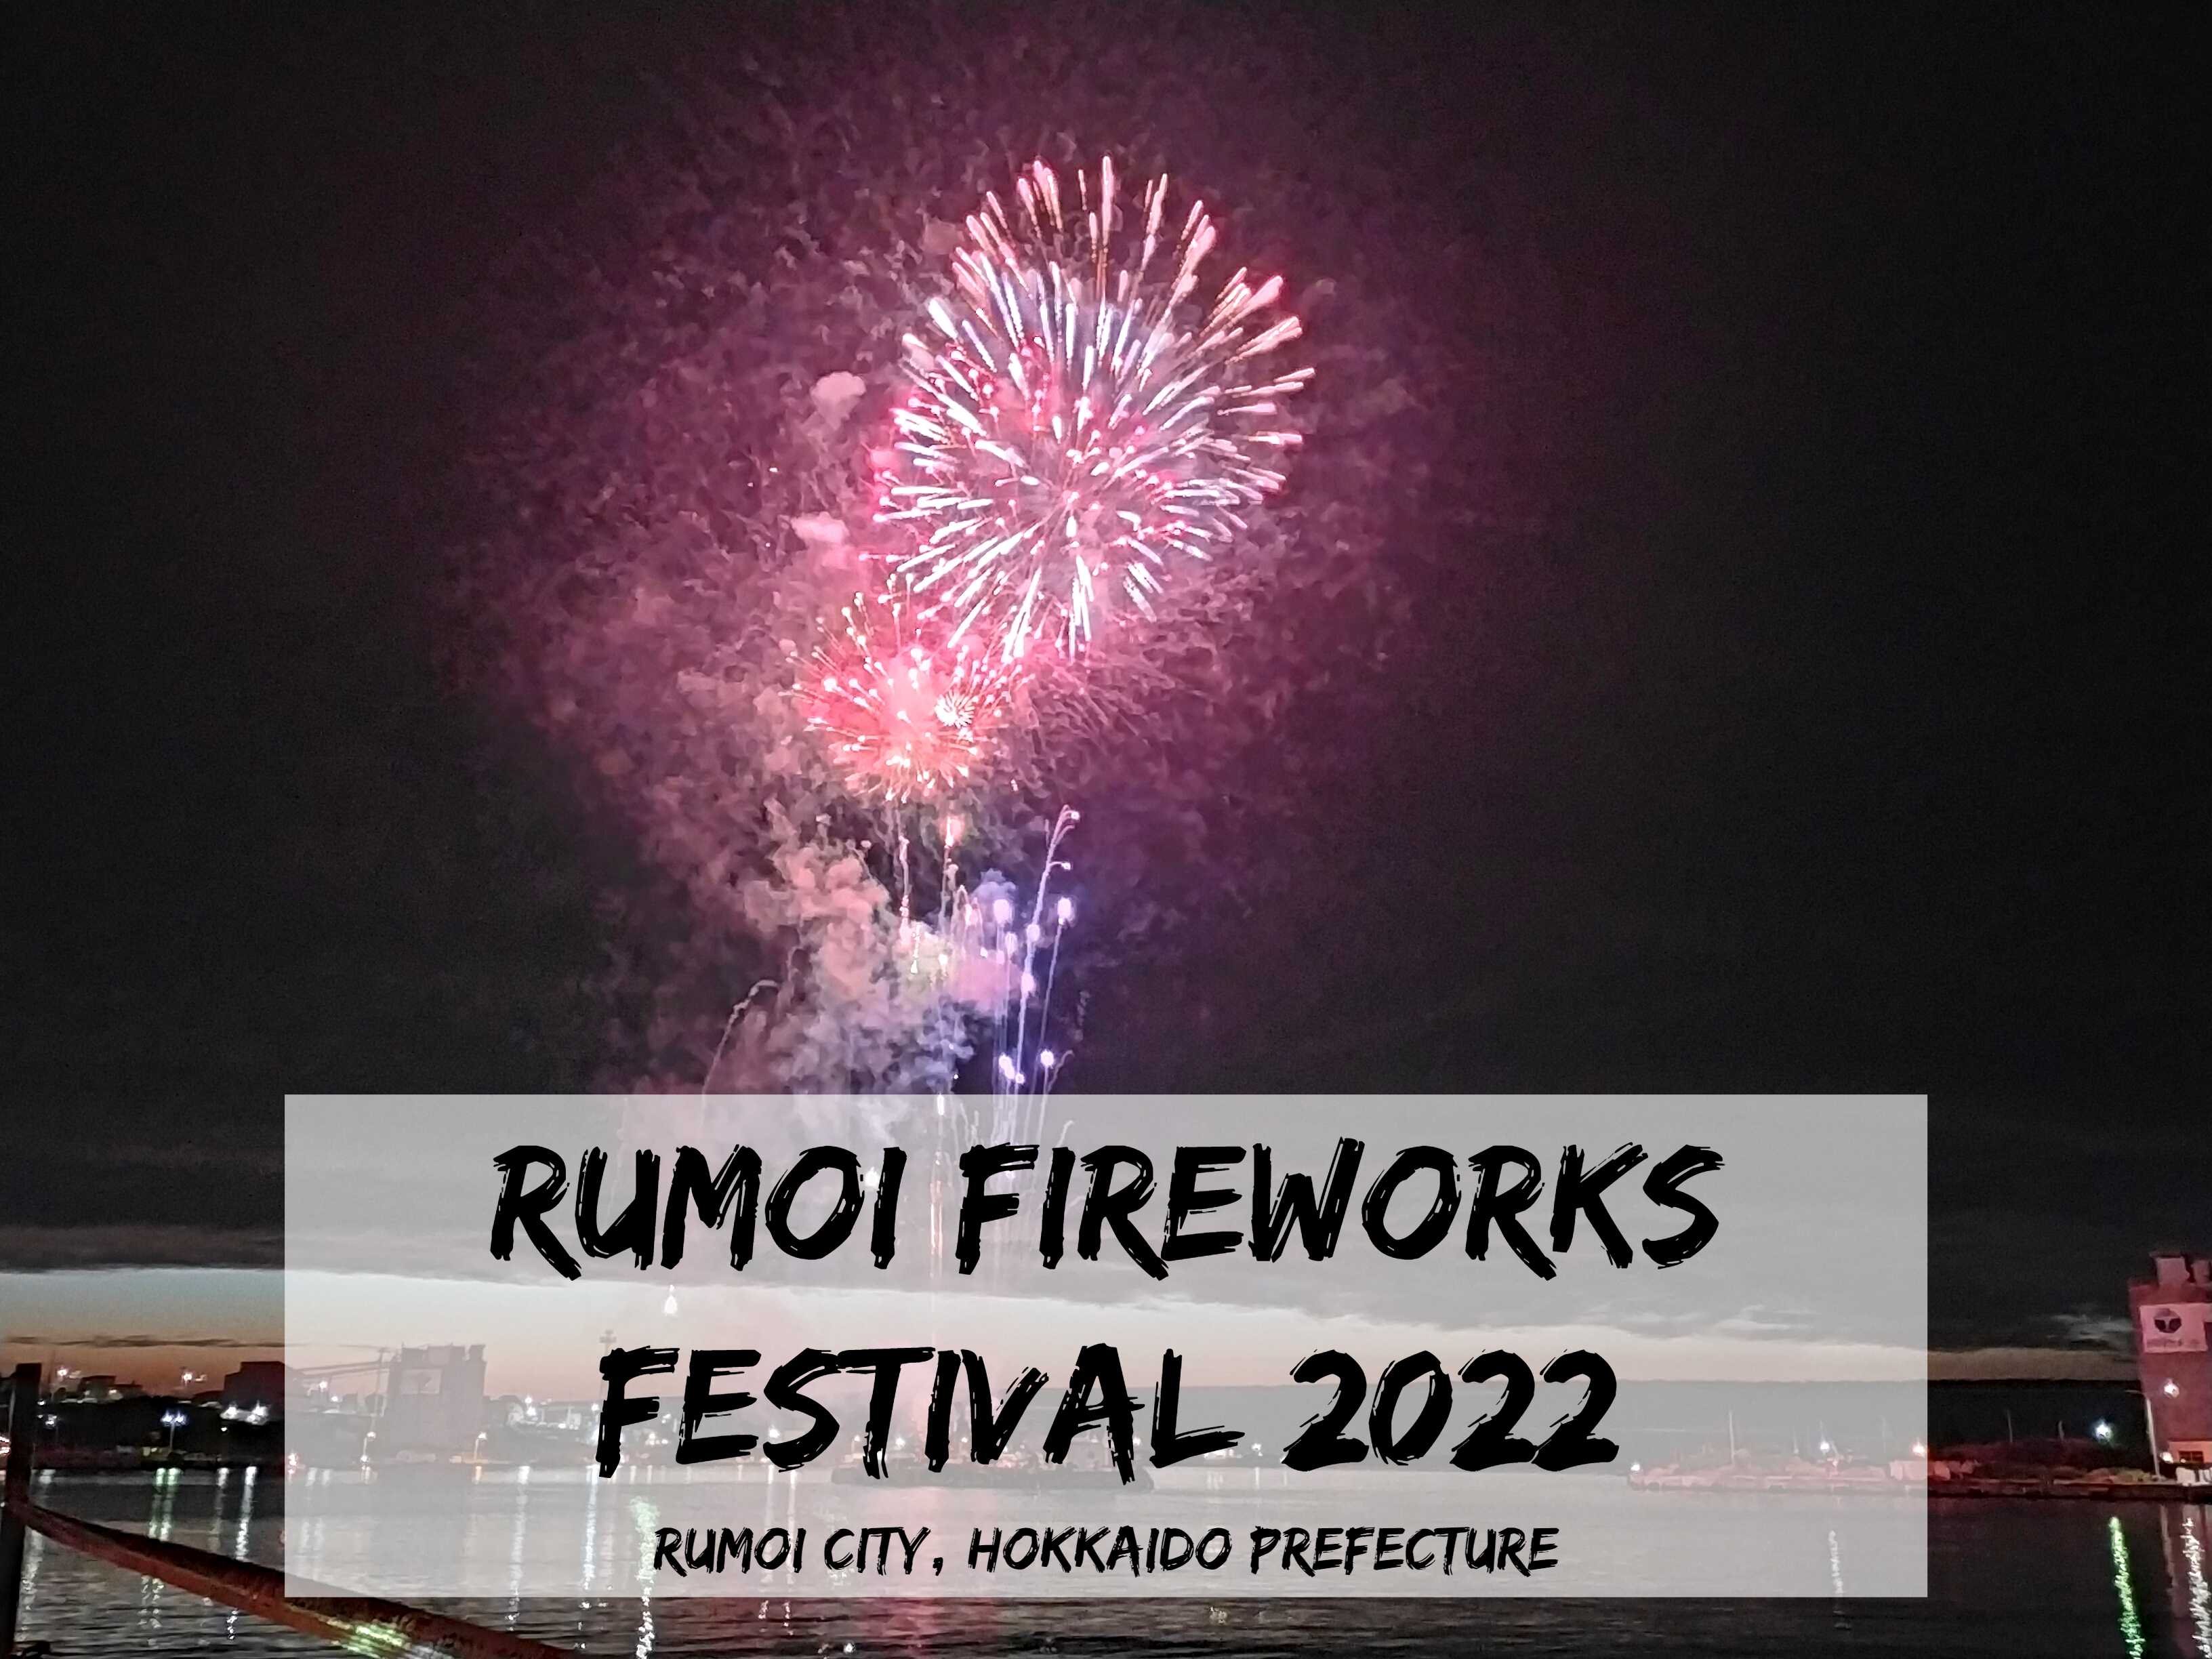 Rumoi Fireworks Festival 2022